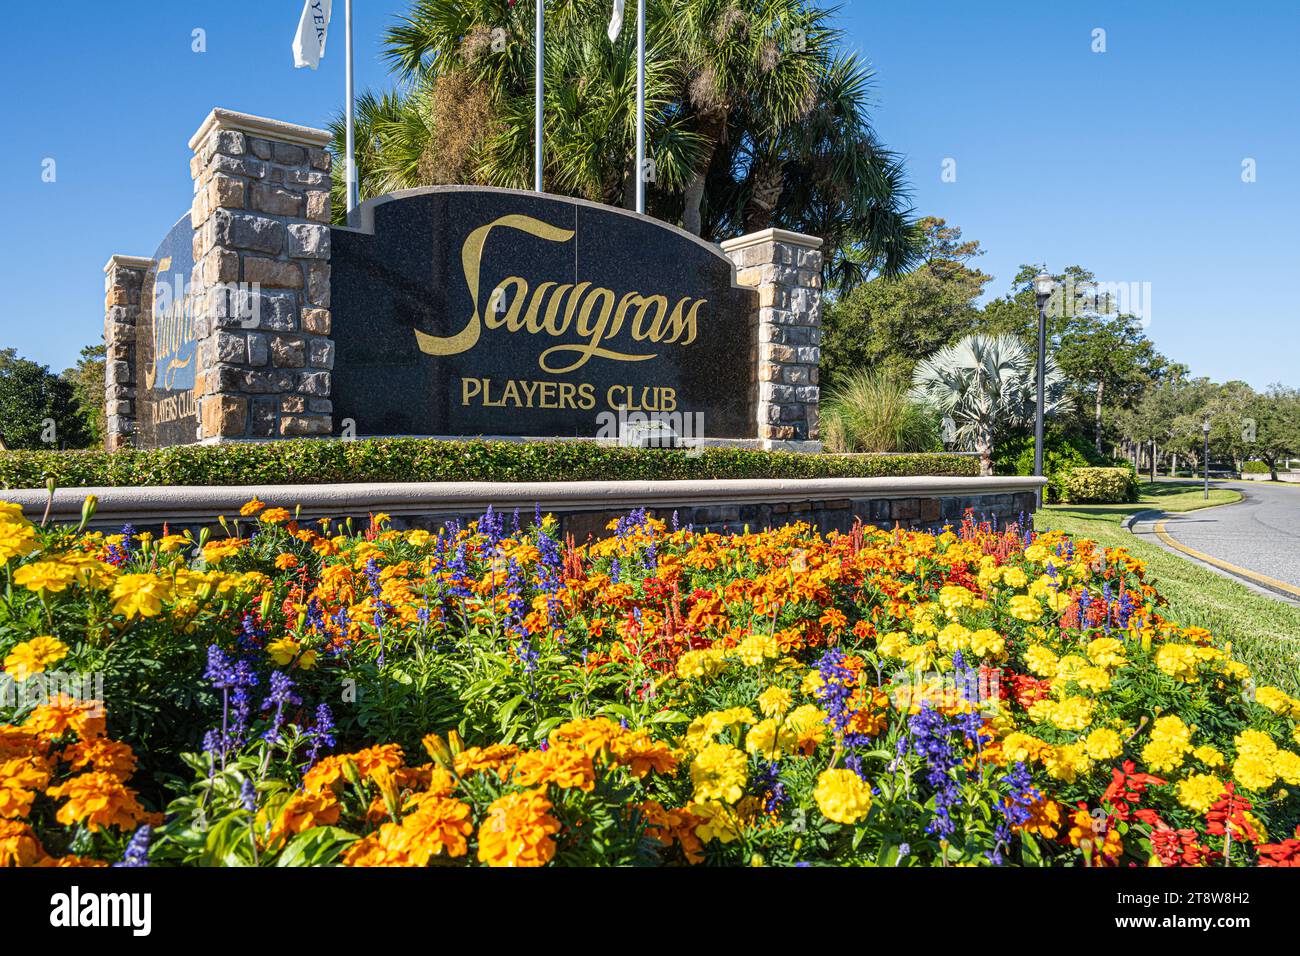 Ingresso lungo la Florida A1A per il Sawgrass Players Club, una comunità privata con recinzione e sede del campionato di golf PLAYERS a Ponte Vedra Beach, Florida. Foto Stock